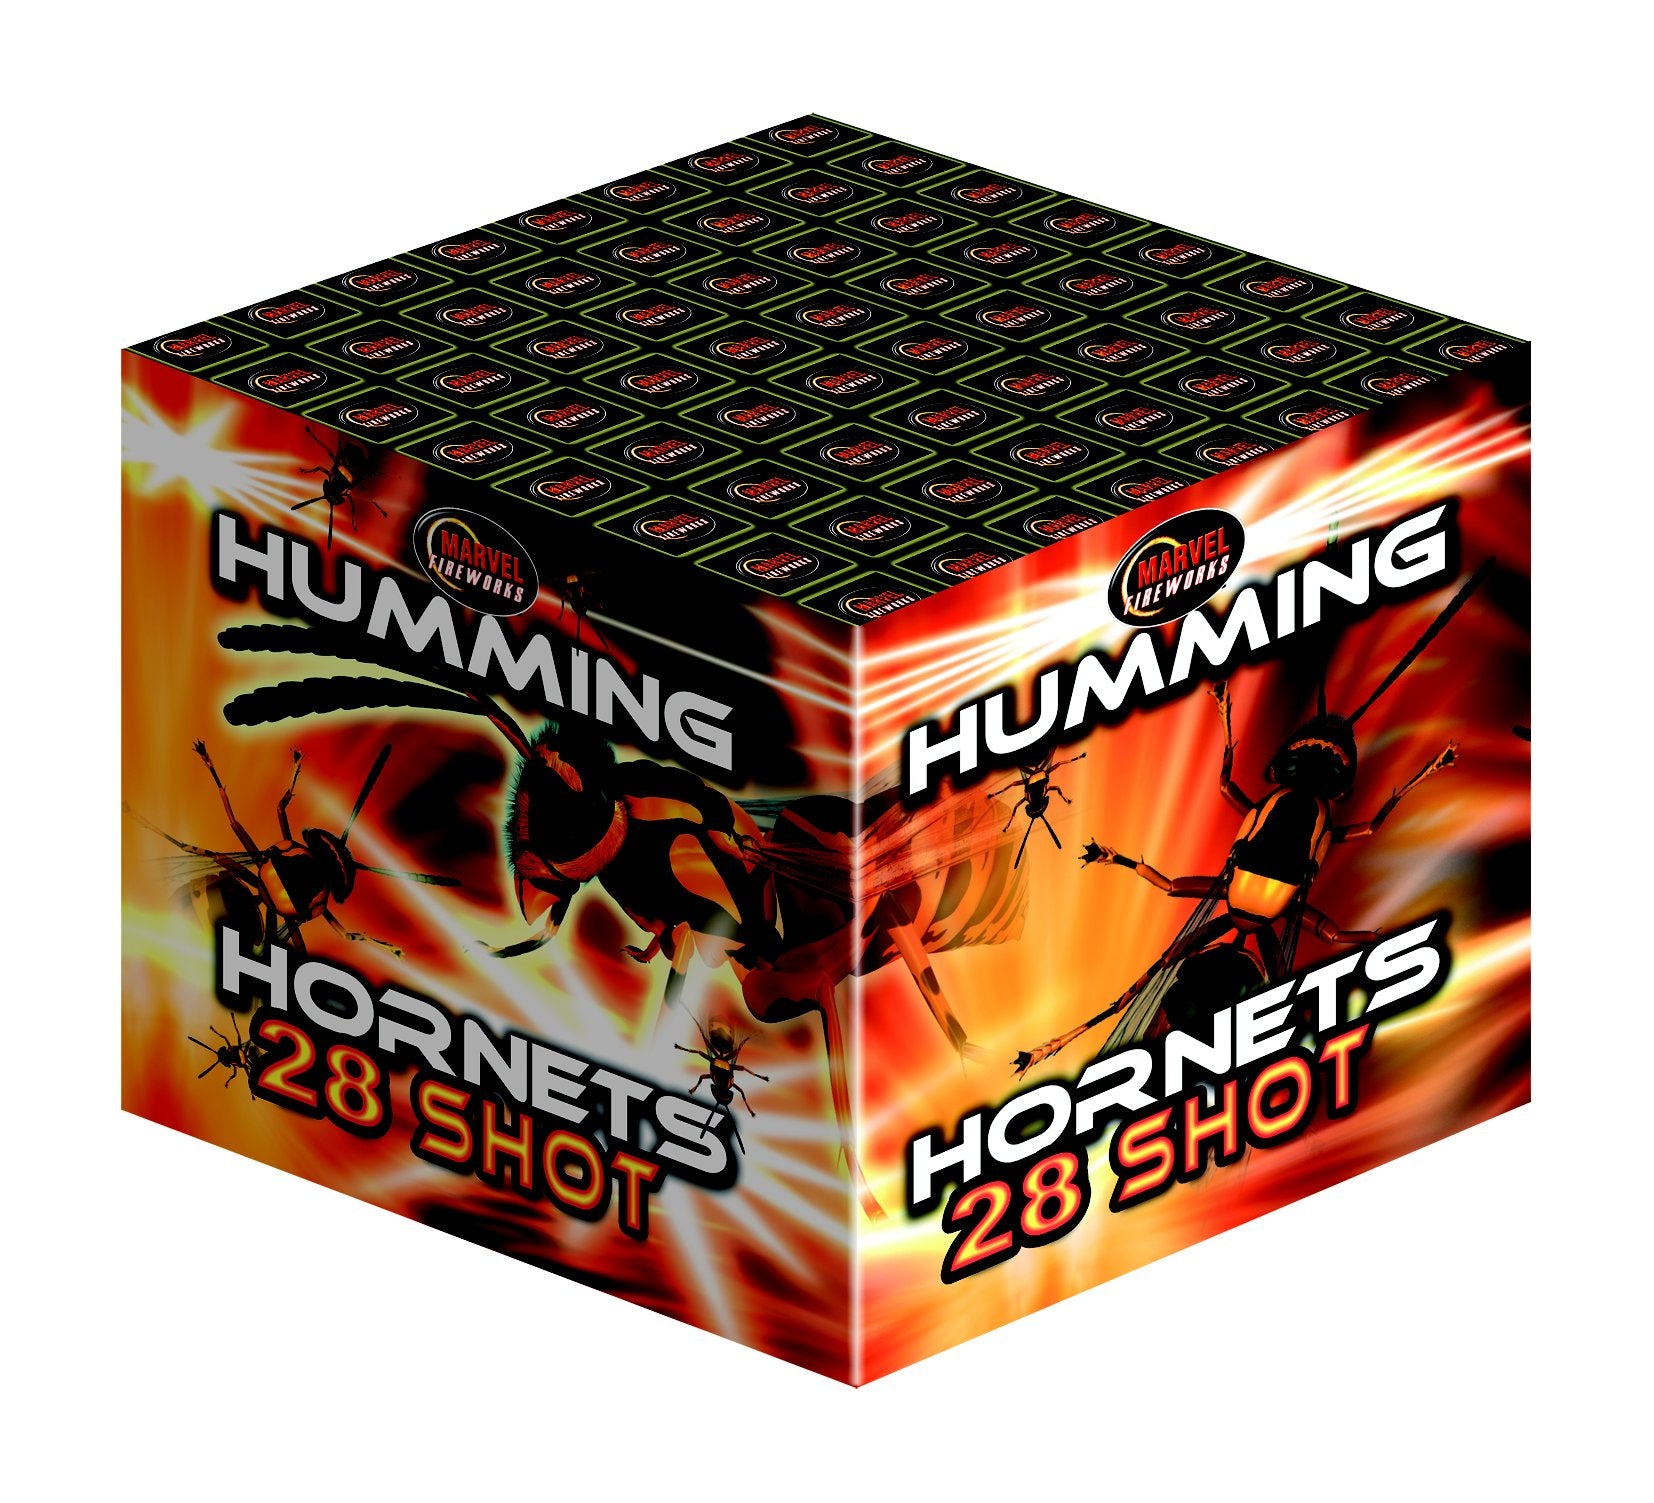 New for 08: Humming Hornets